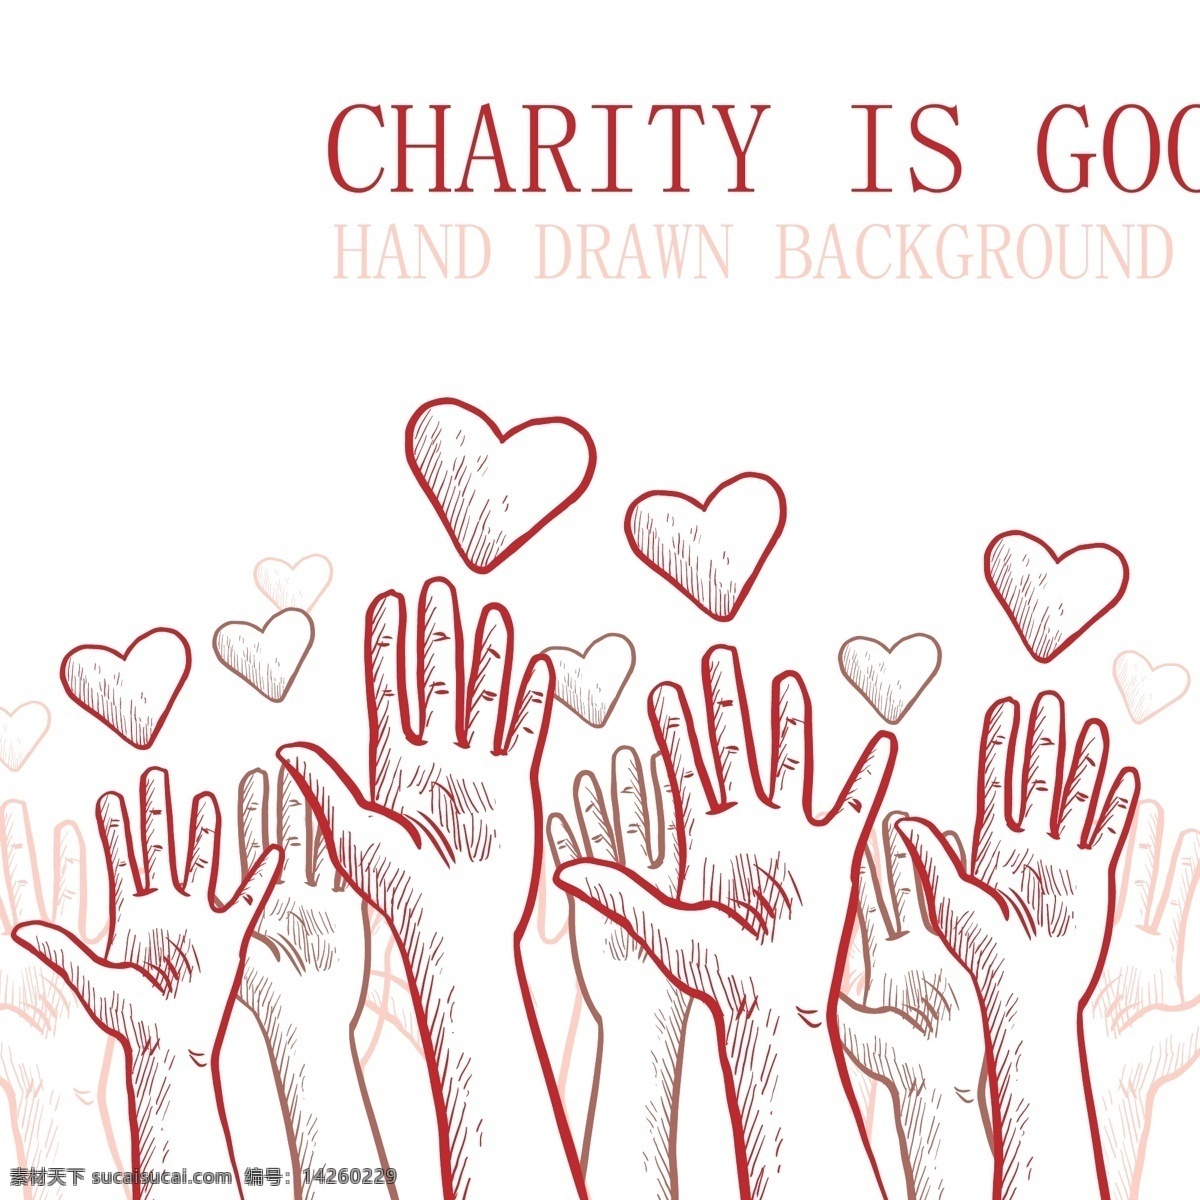 彩绘 手臂 爱心 慈善 海报 矢量图 捐款 公益 捐助 文化艺术 绘画书法